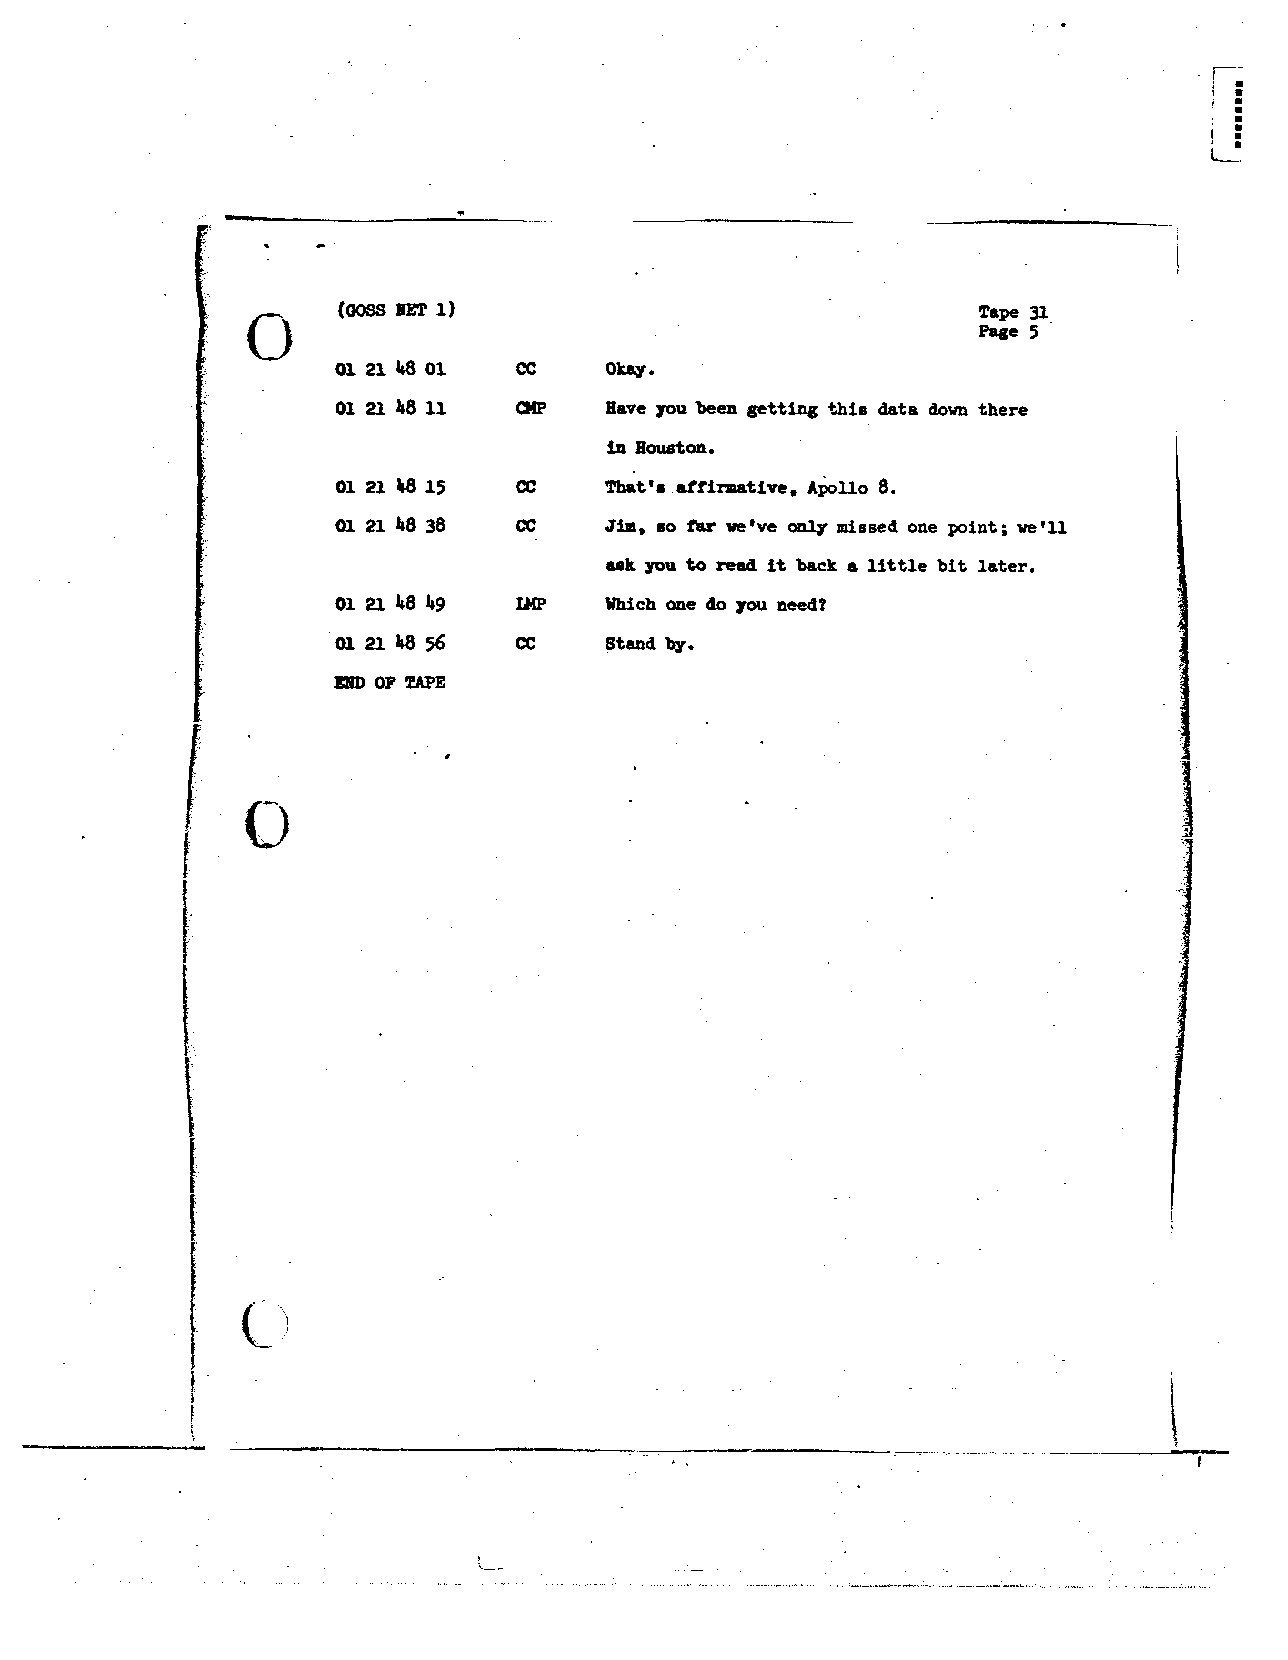 Page 244 of Apollo 8’s original transcript